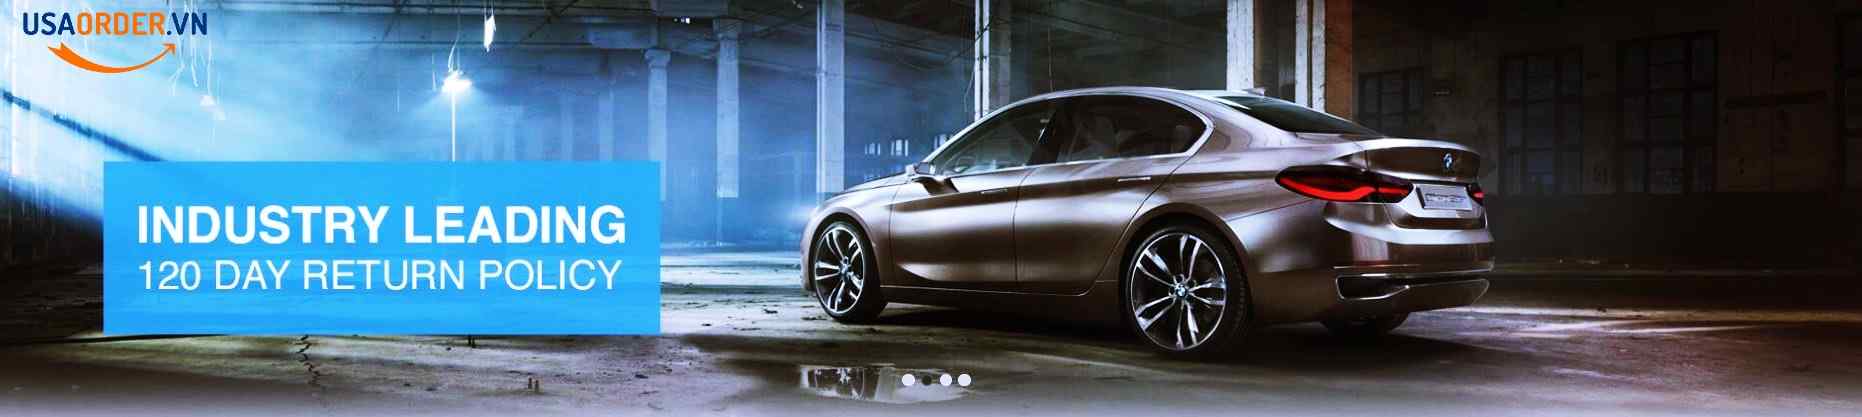 BMW - Mua sắm Phanh, Ly hợp, Hệ thống làm mát, Điện Hệ thống khí thải ,